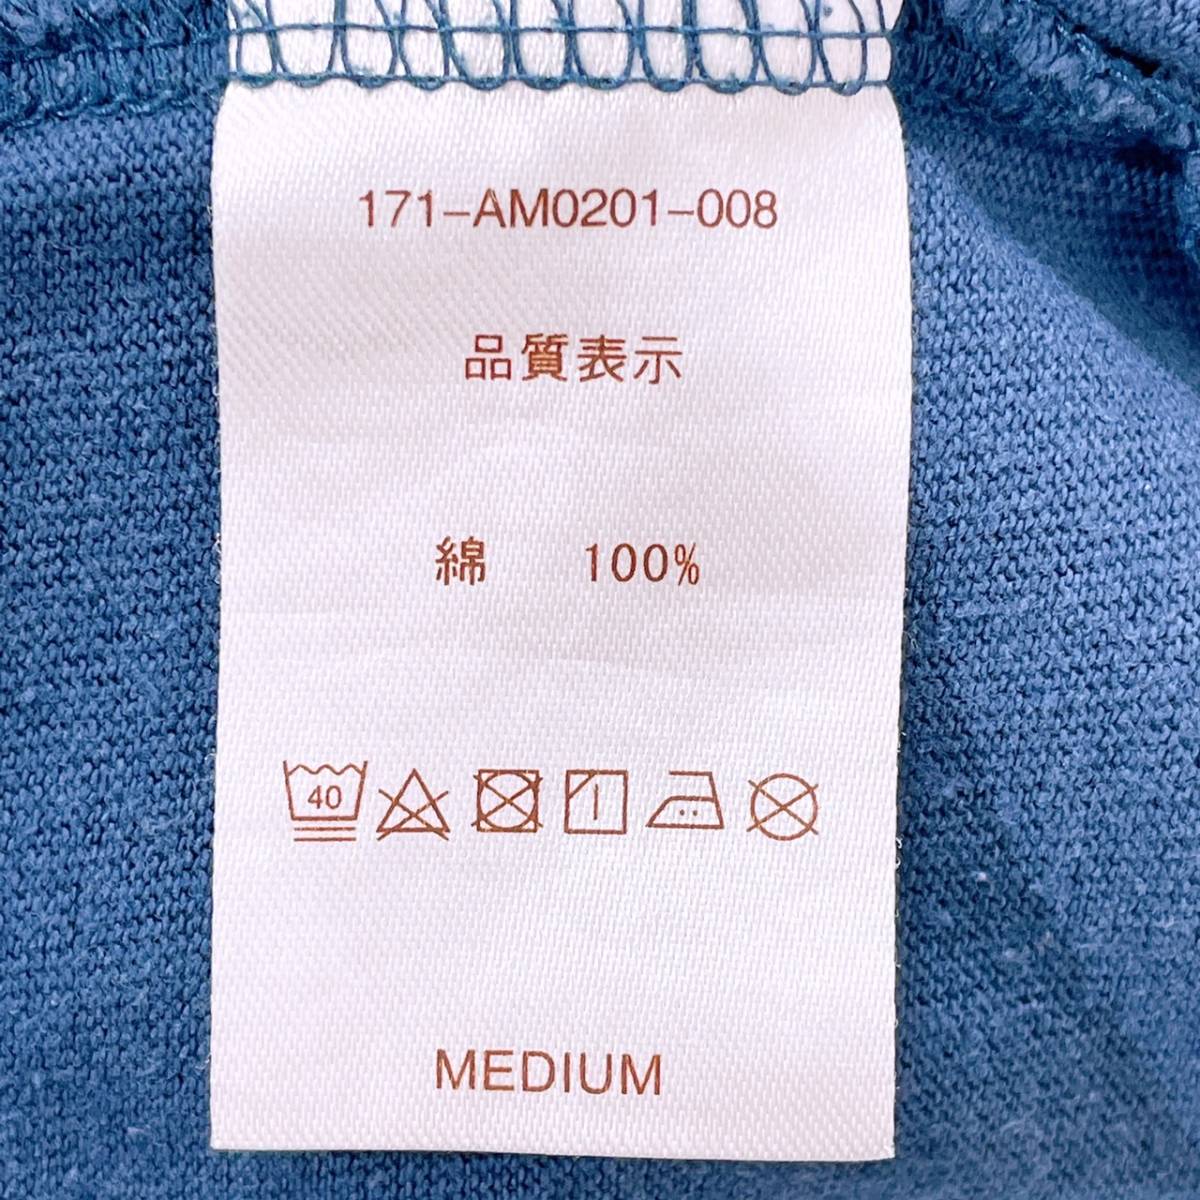 【20964】 ALOHA MADE アロハメイド ファッション レディース トップス シャツ 半袖シャツ Tシャツ 丸ネック ロゴプリント ブルー 青 M